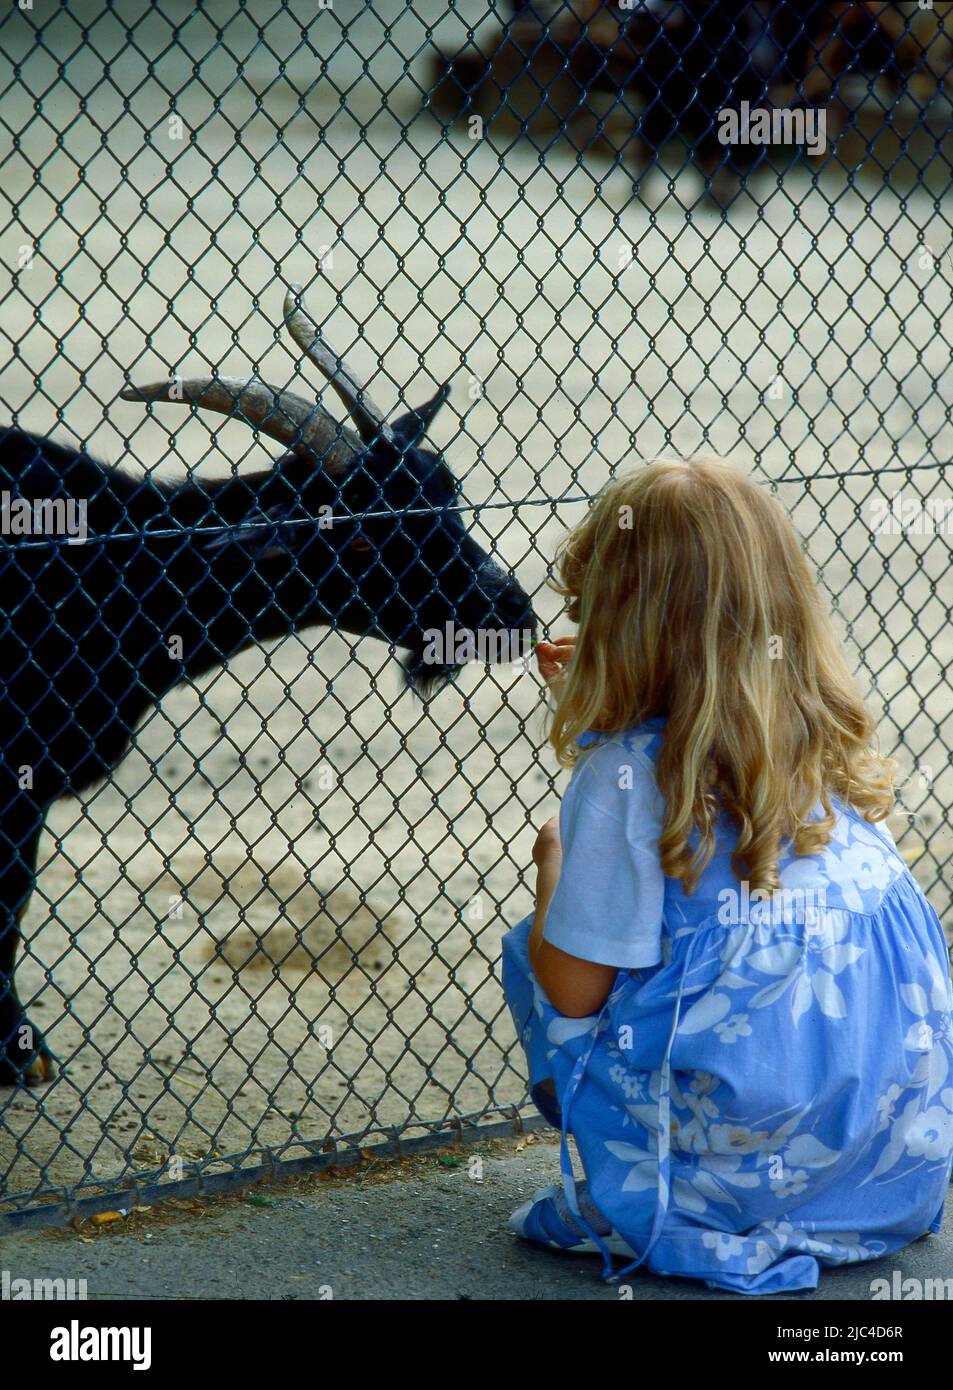 Petite fille et chèvre, Zoo, petite fille et nounou chèvre Banque D'Images